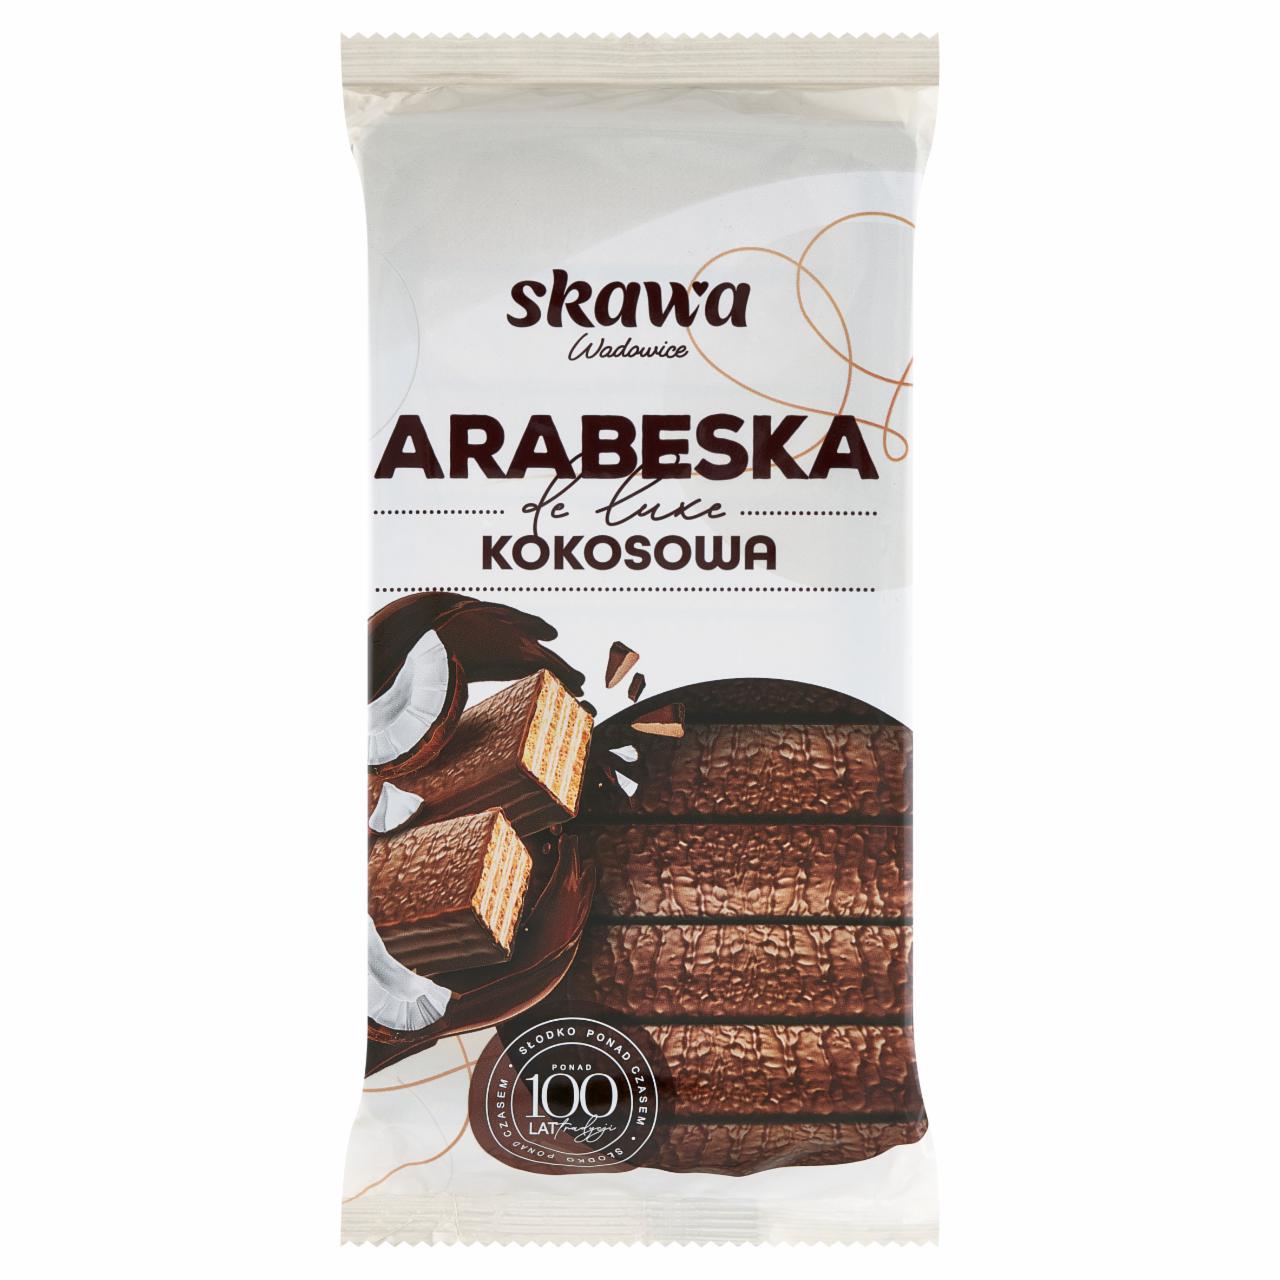 Zdjęcia - Wadowice Skawa Arabeska de luxe kokosowa 190 g